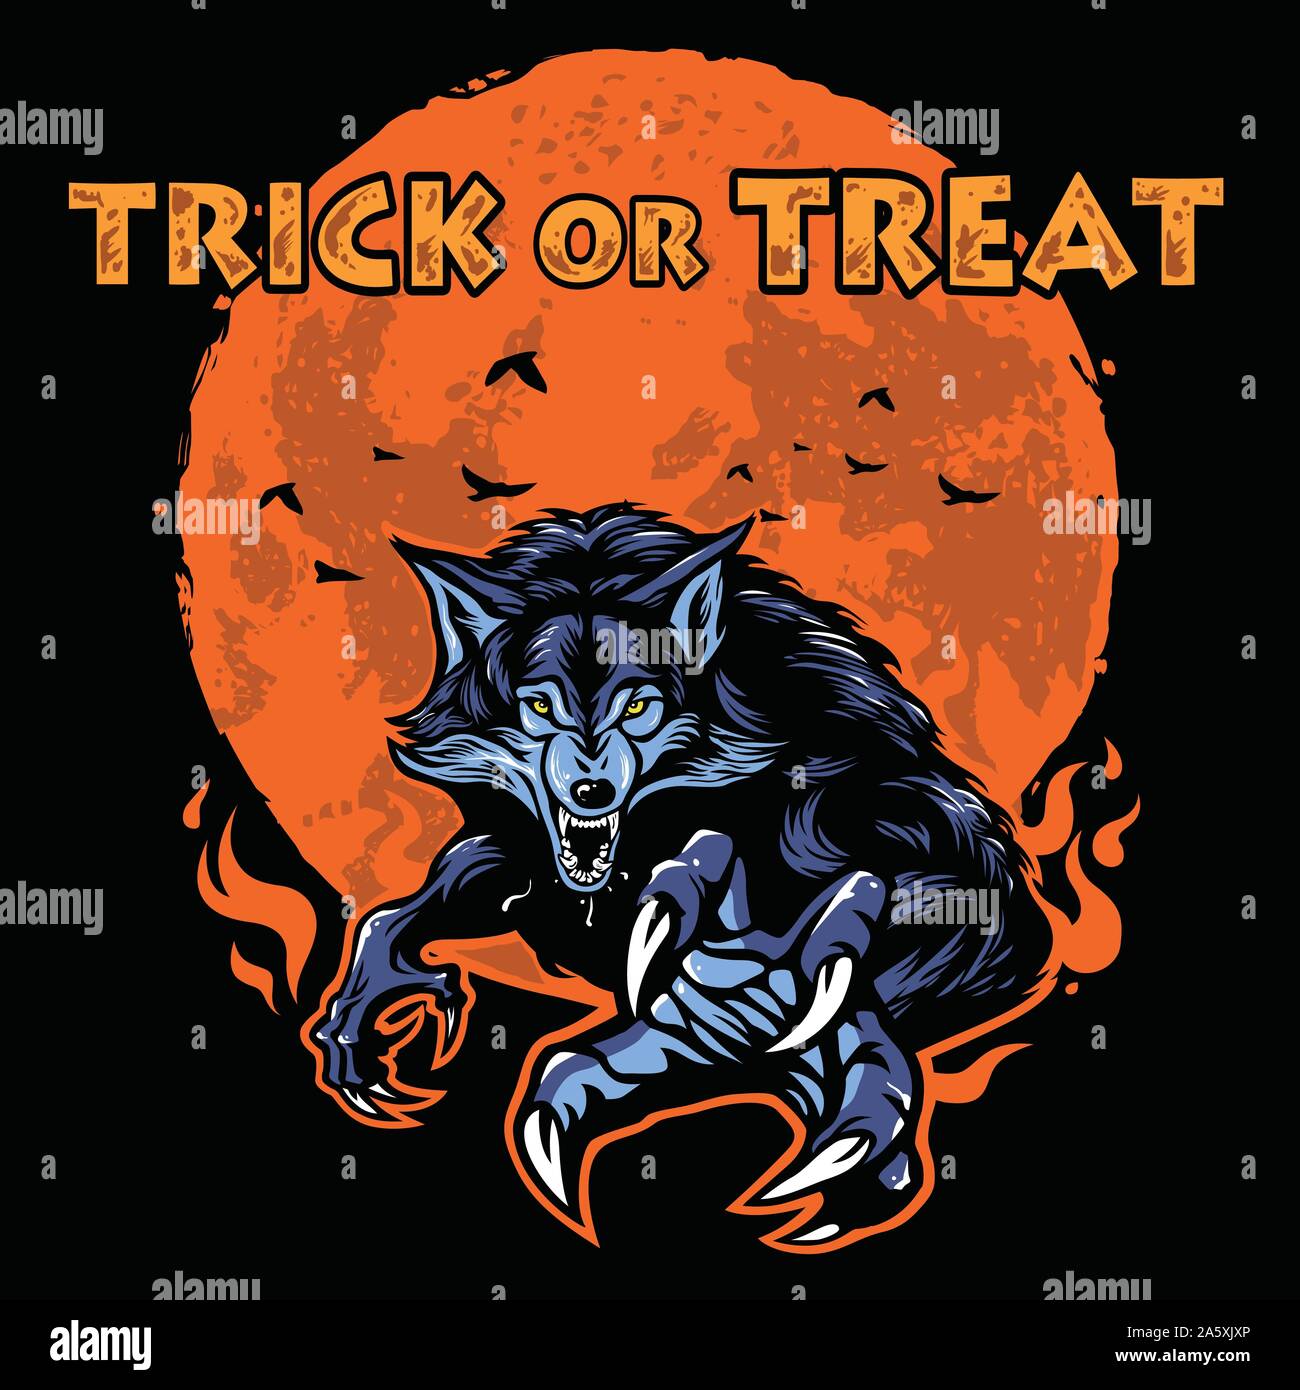 Werewolf Halloween Poster Character Design Vector Illustration Stock Vector